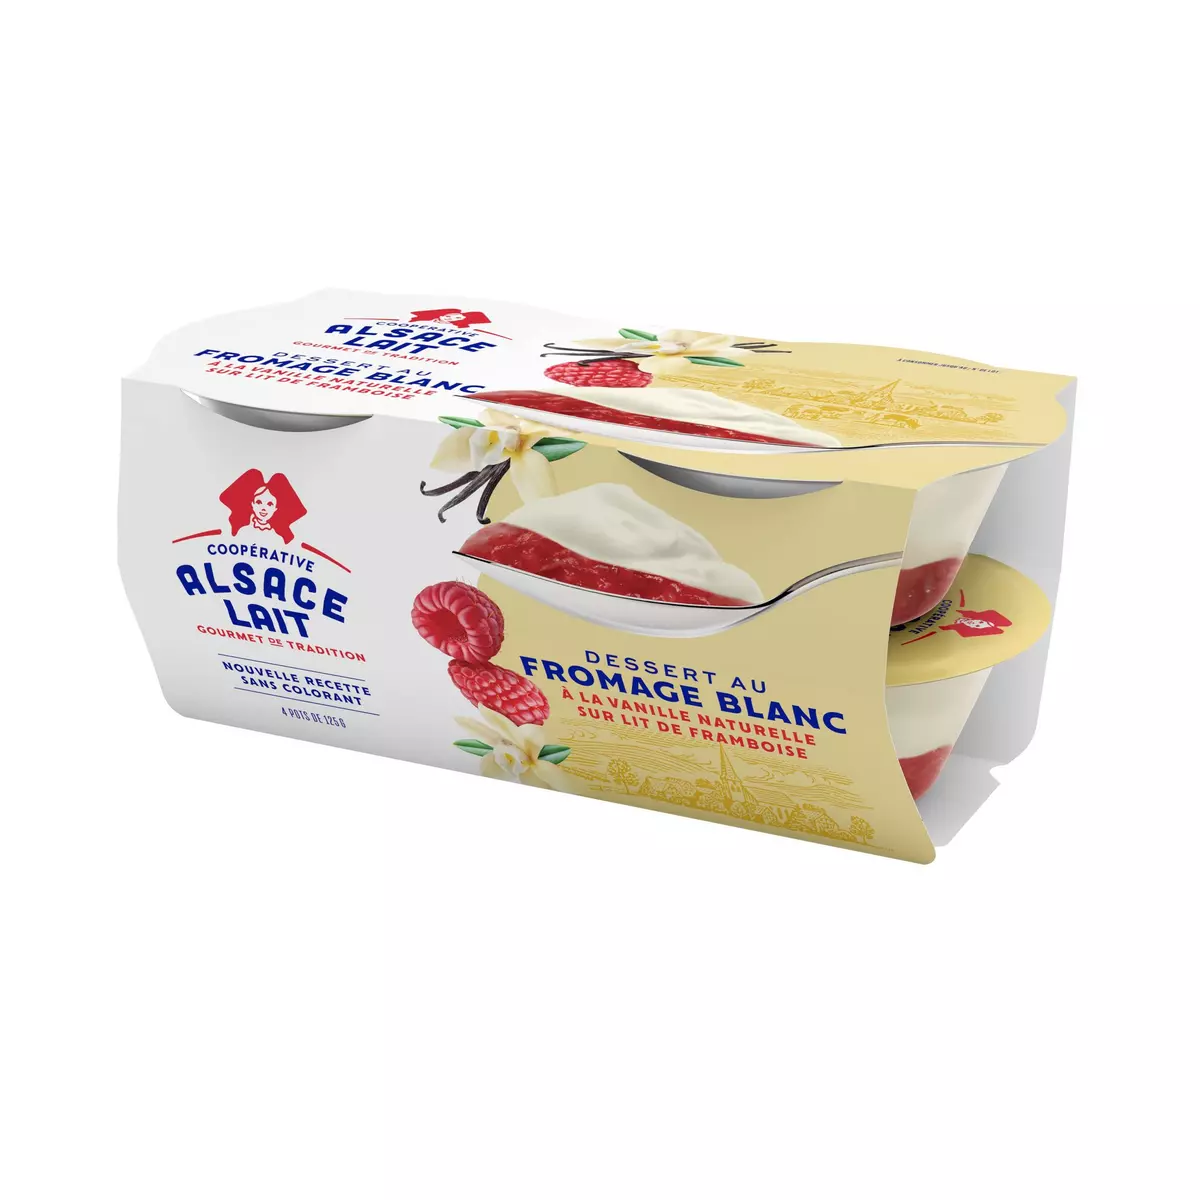 ALSACE LAIT Dessert au fromage blanc à la vanille naturelle sur lit de framboises 4x125g